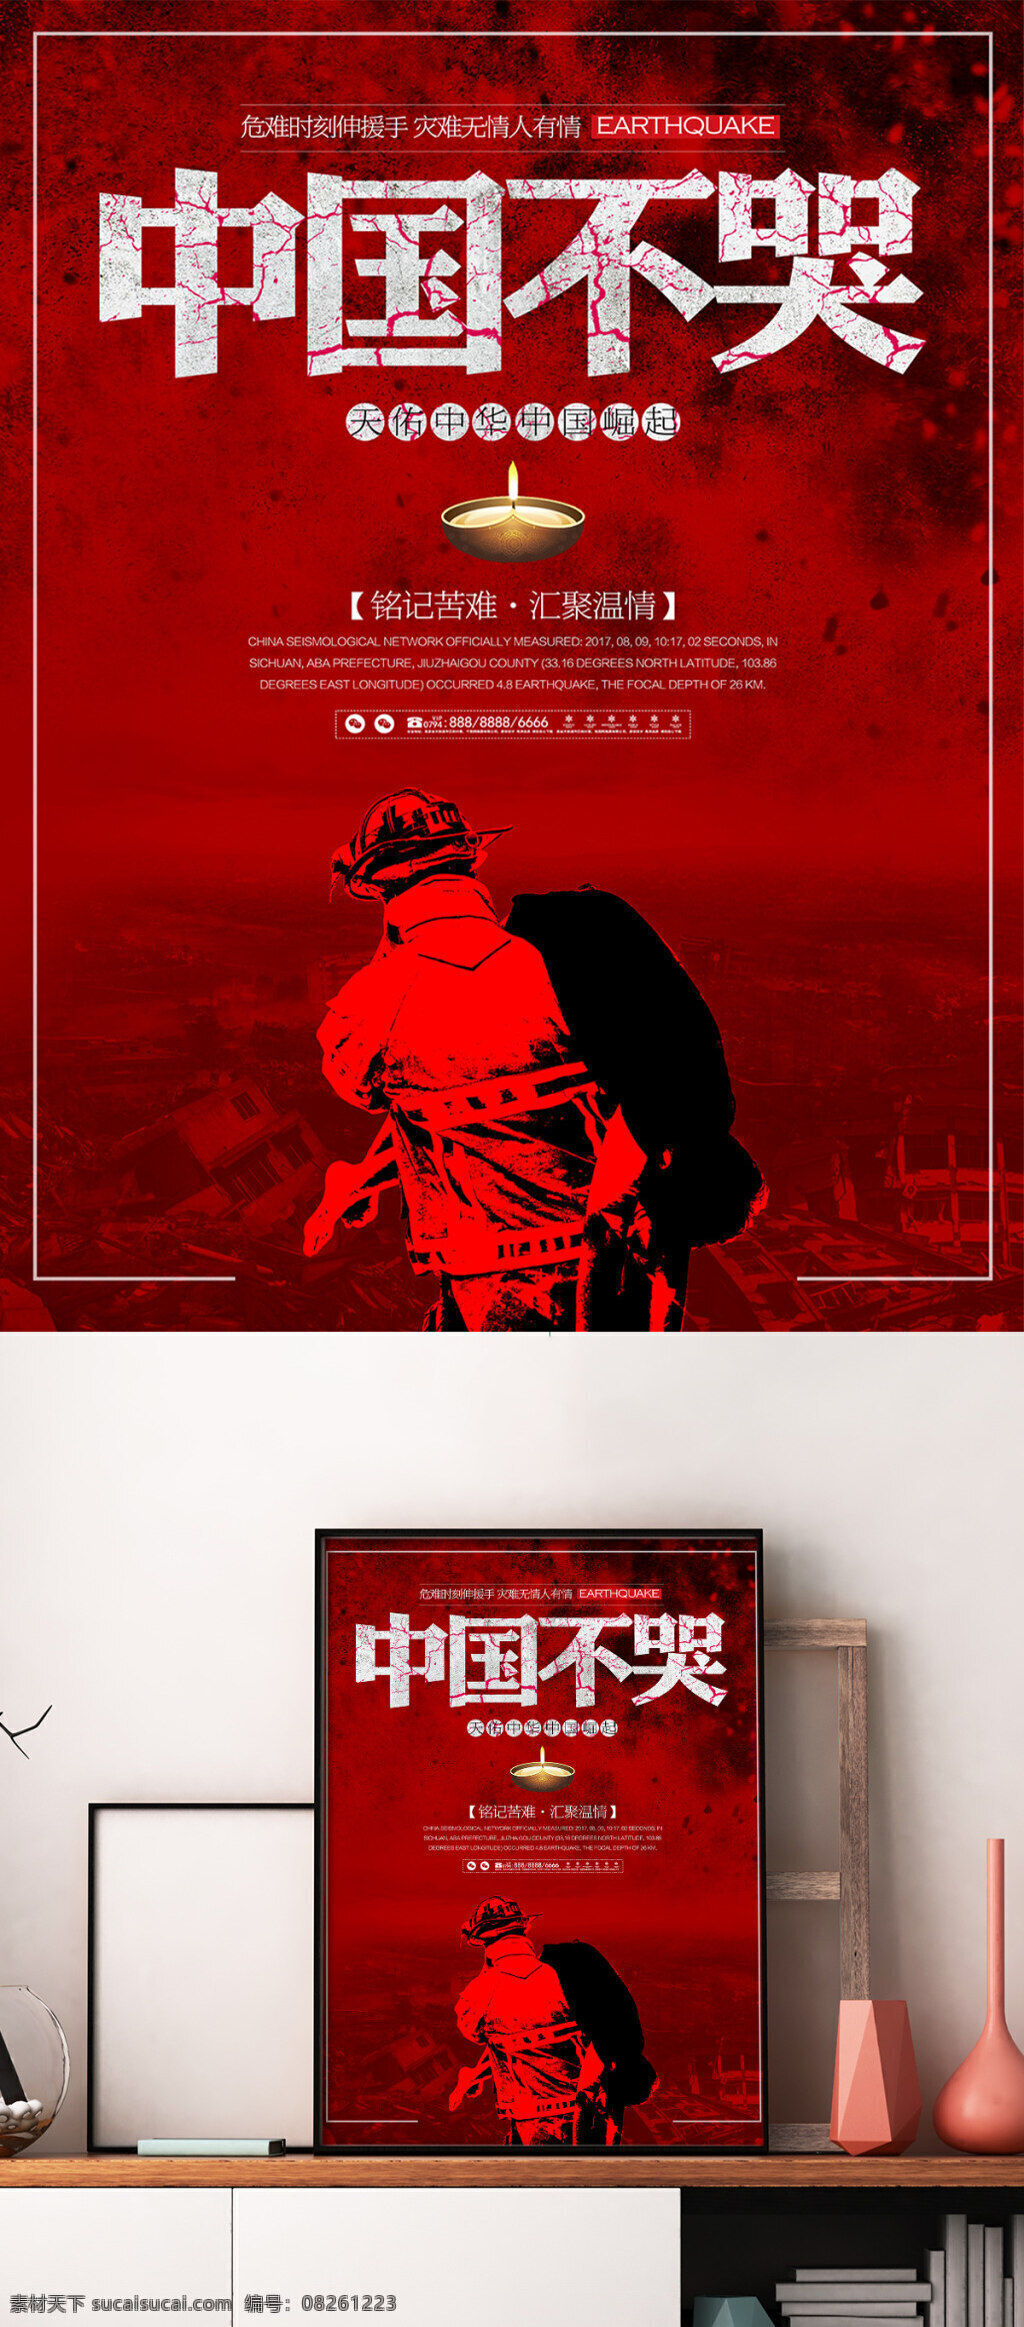 中国 不 哭 地震 祈福 灾难 公益 海报 平安 不哭 展板 宣传